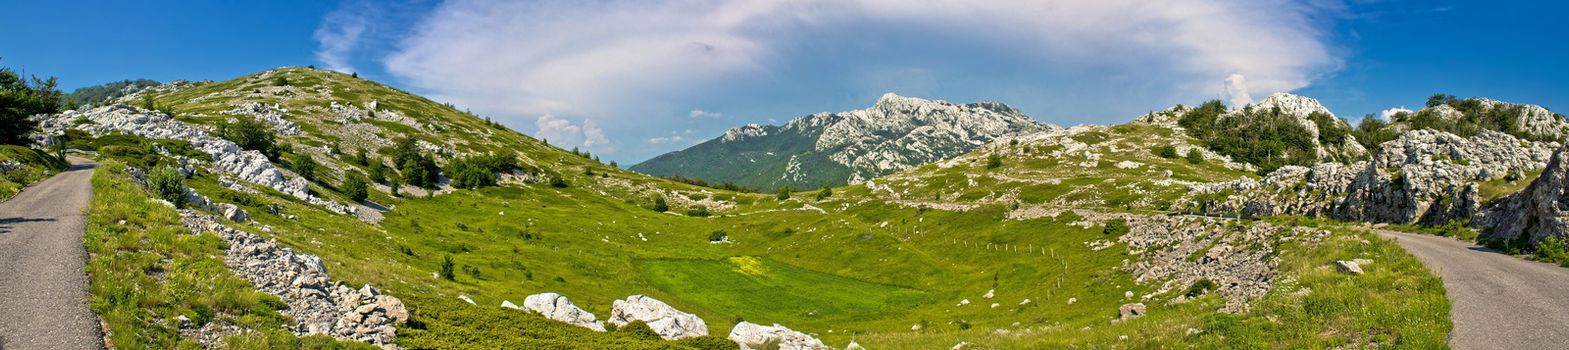 Velebit mountain wilderness panoramic view, Crnopac peak, Croatia